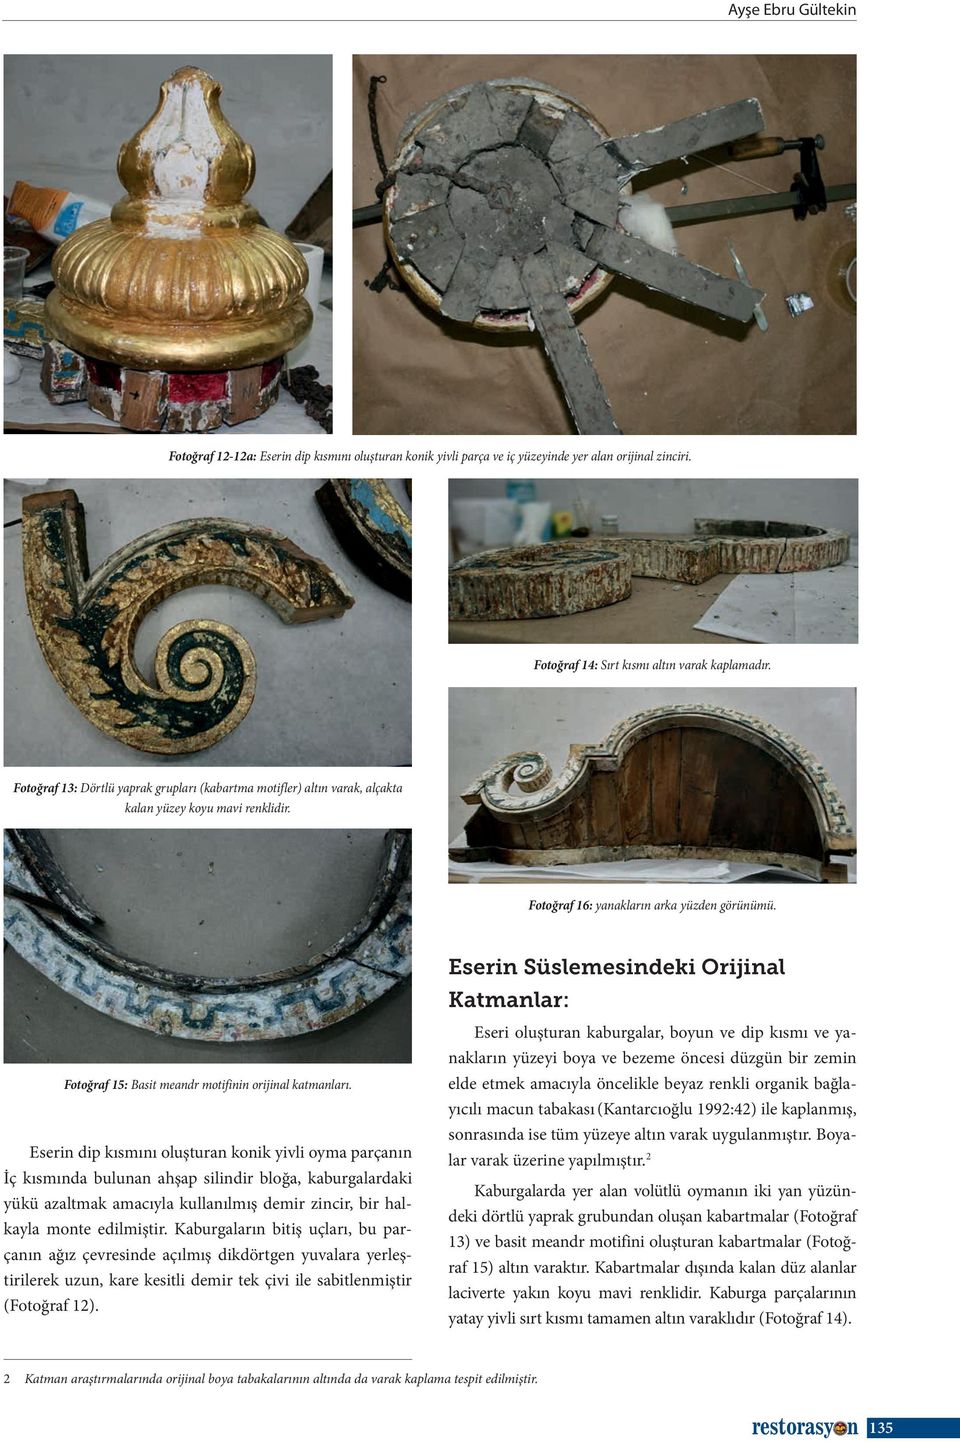 Eserin Süslemesindeki Orijinal Katmanlar: Fotoğraf 15: Basit meandr motifinin orijinal katmanları.